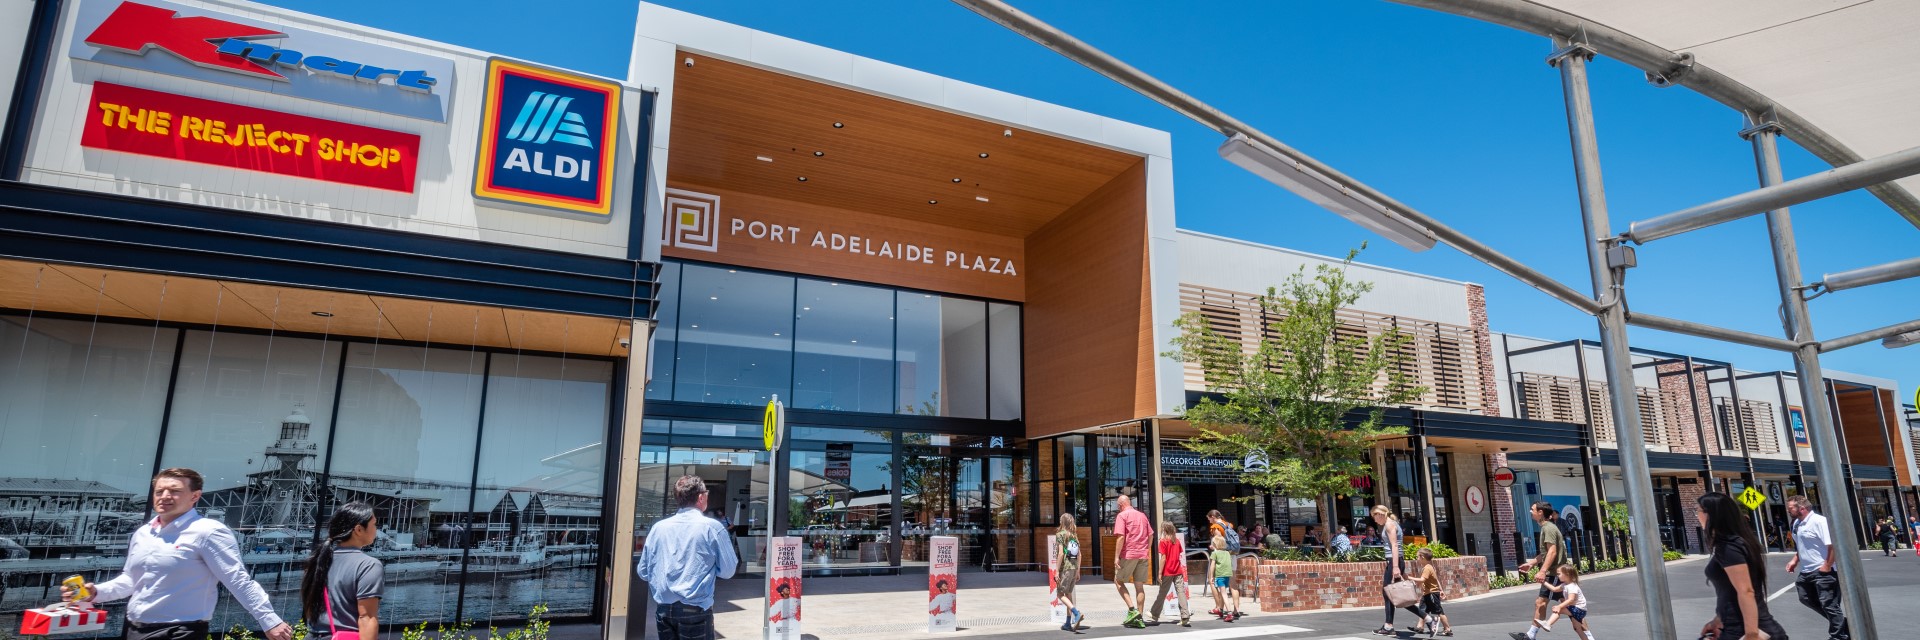 Port Adelaide Plaza (SA)